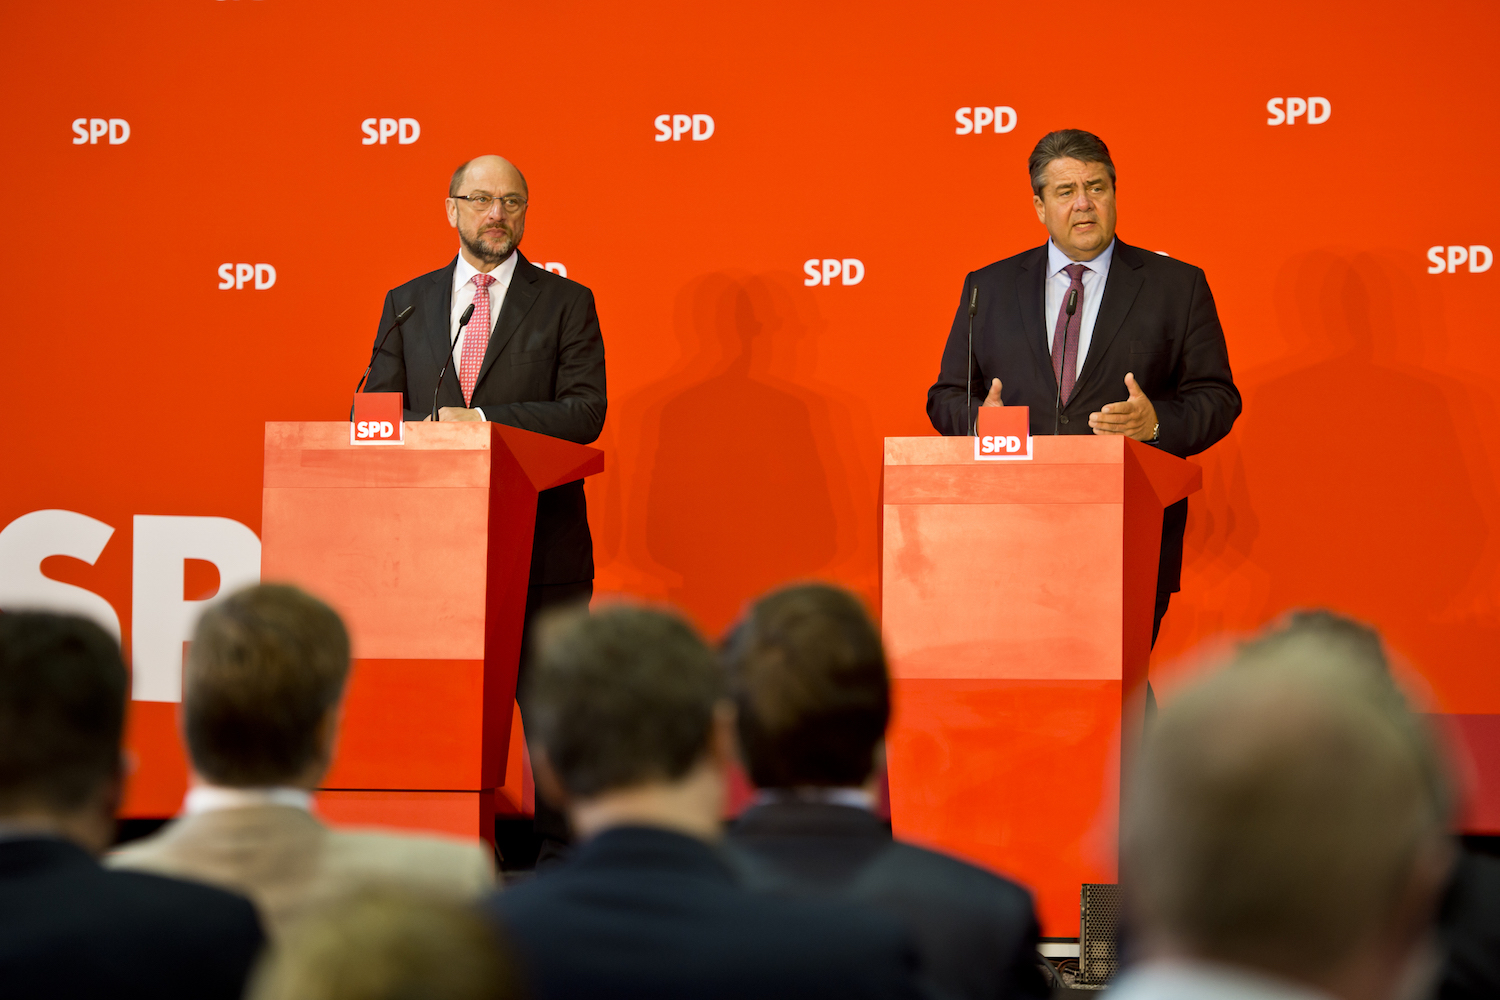 Foto: Sigmar Gabriel und Martin Schulz bei der PK nach dem Parteikonvent in Wolfsburg 